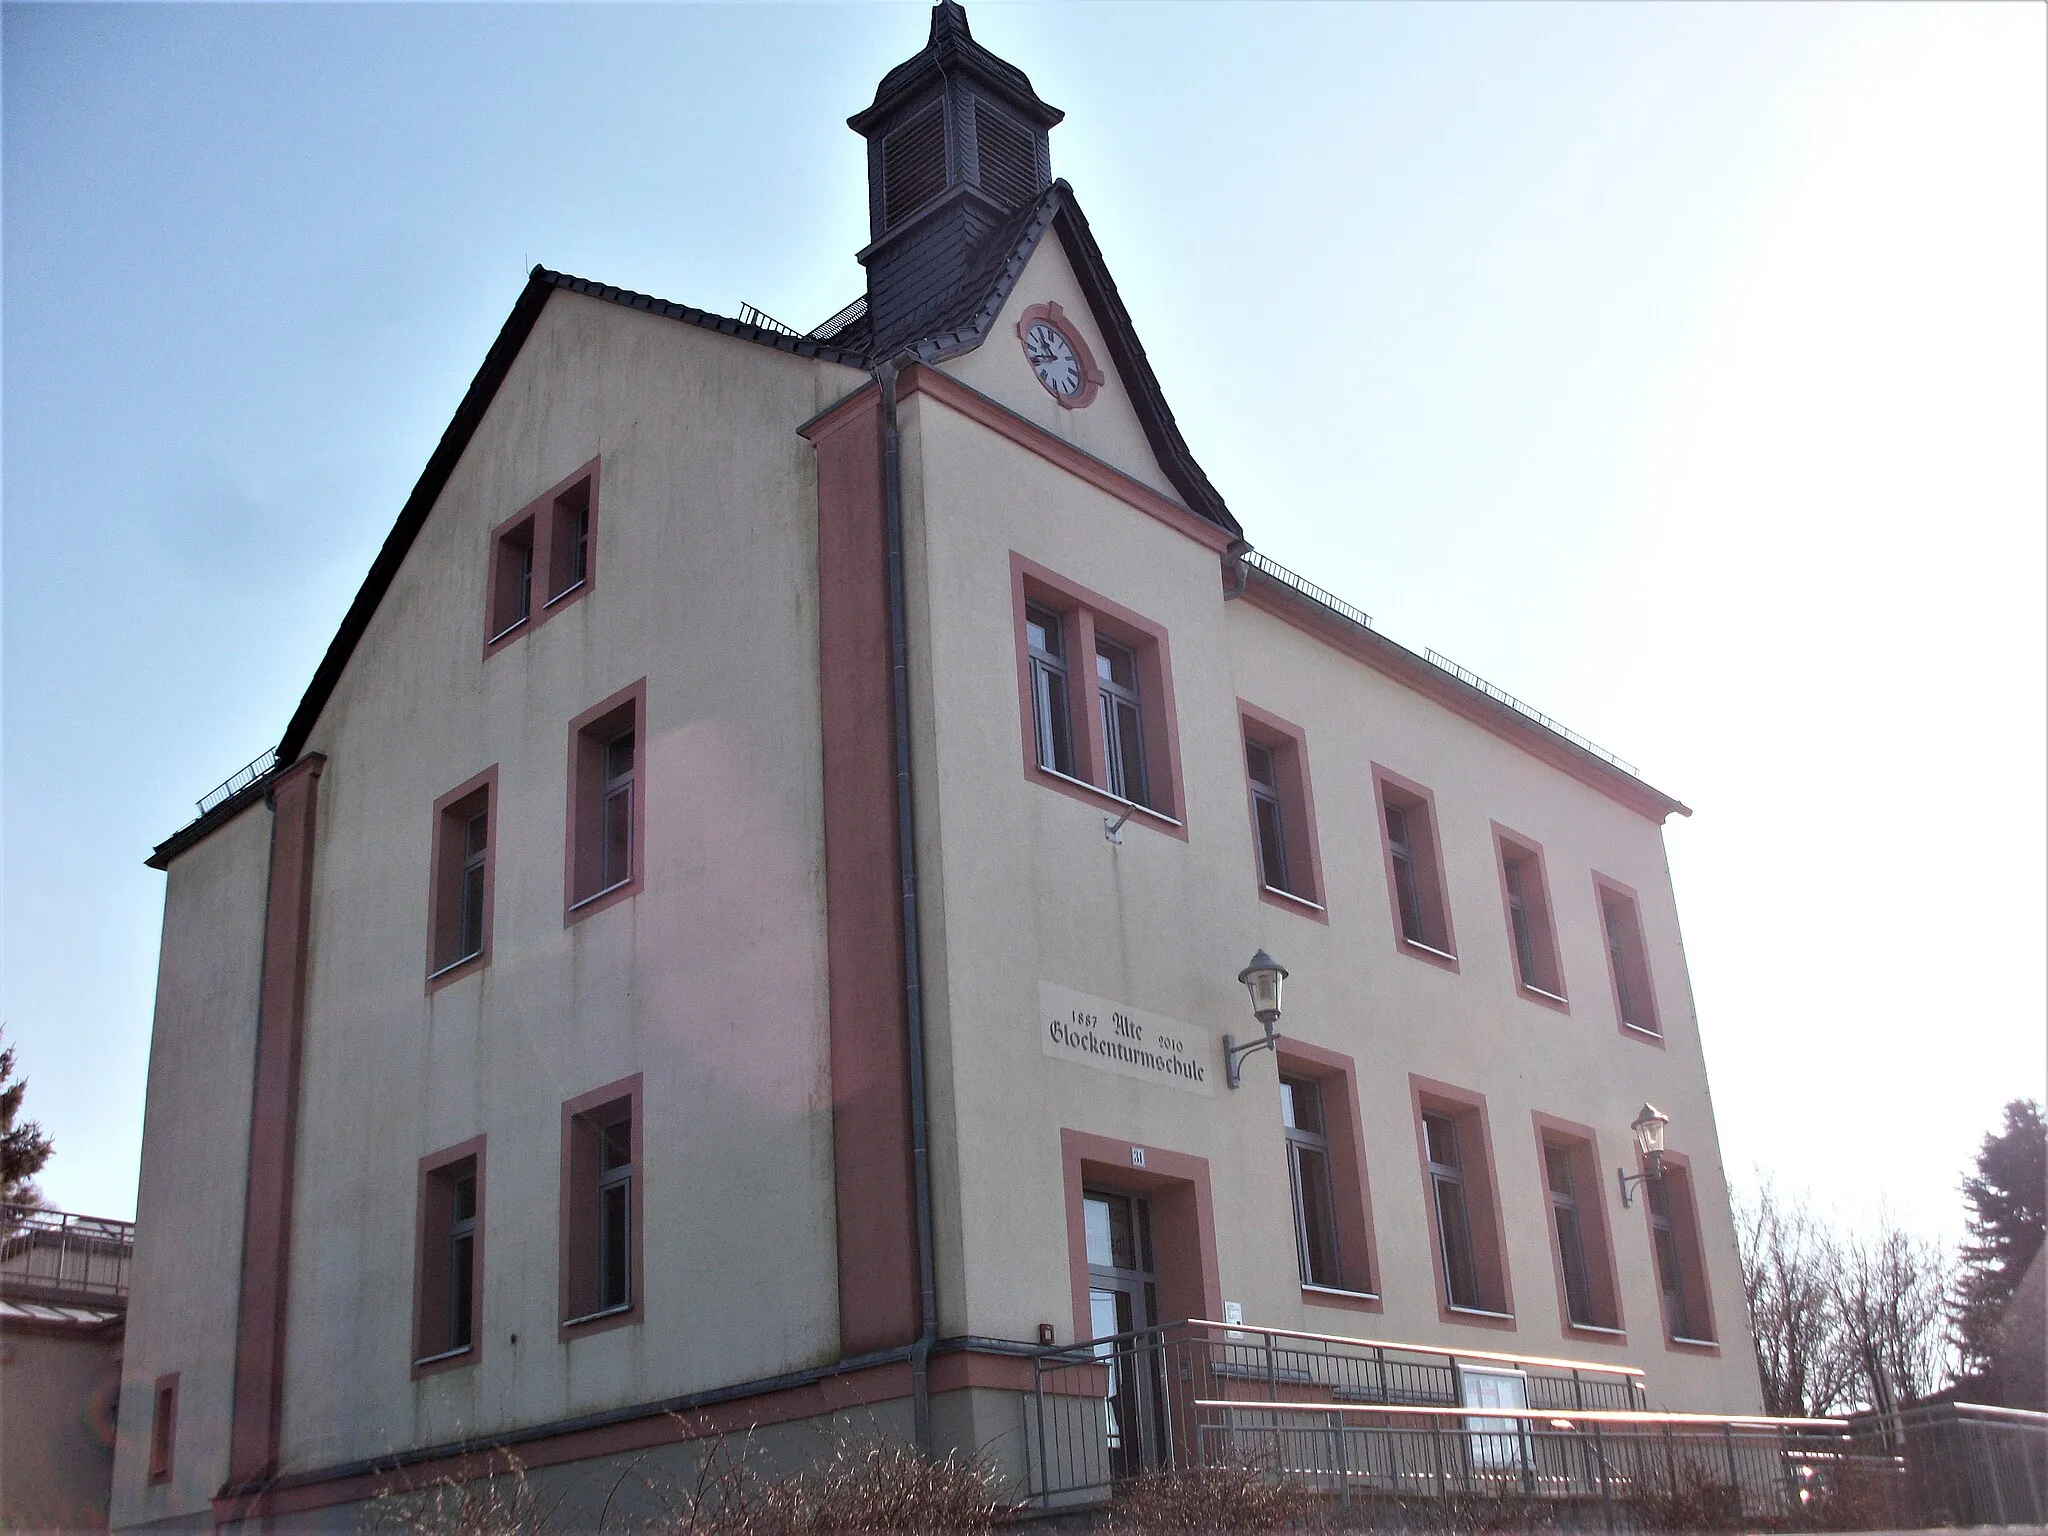 Photo showing: Glockenturmschule Schönerstadt (Dorfgemeinschaftshaus)